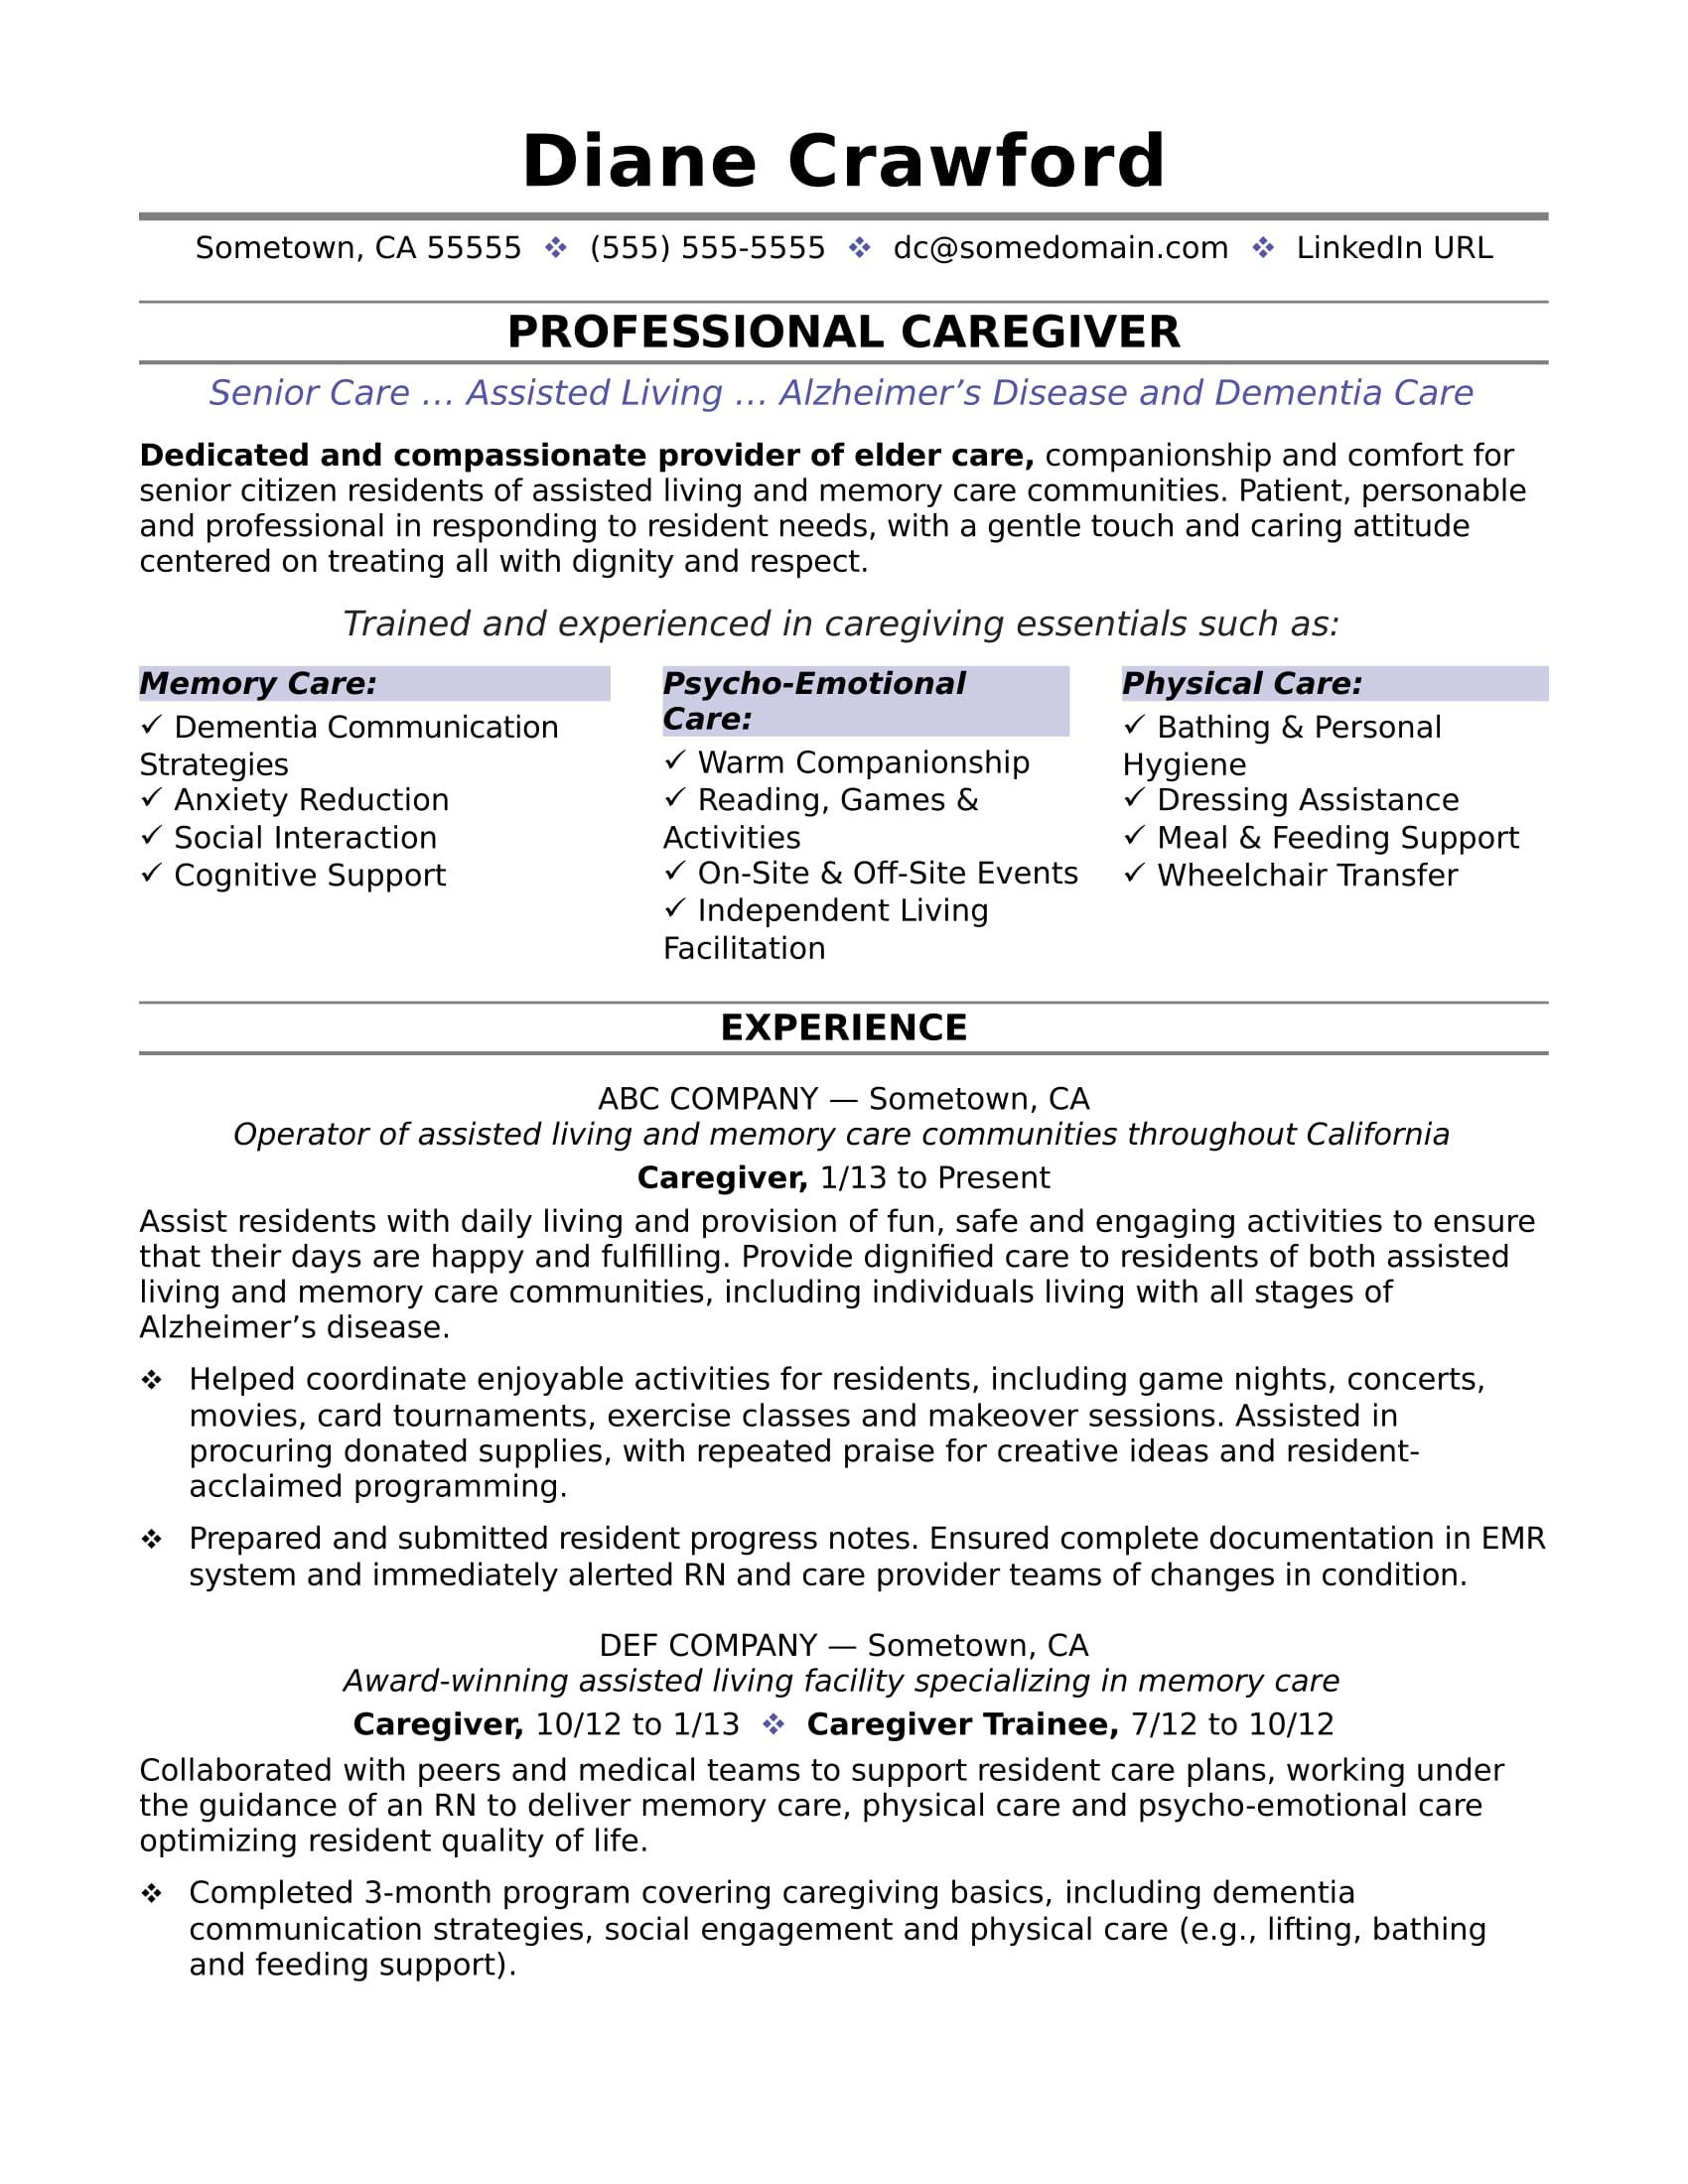 Home Care Job Description Resume Sample Caregiver Resume Monster.com